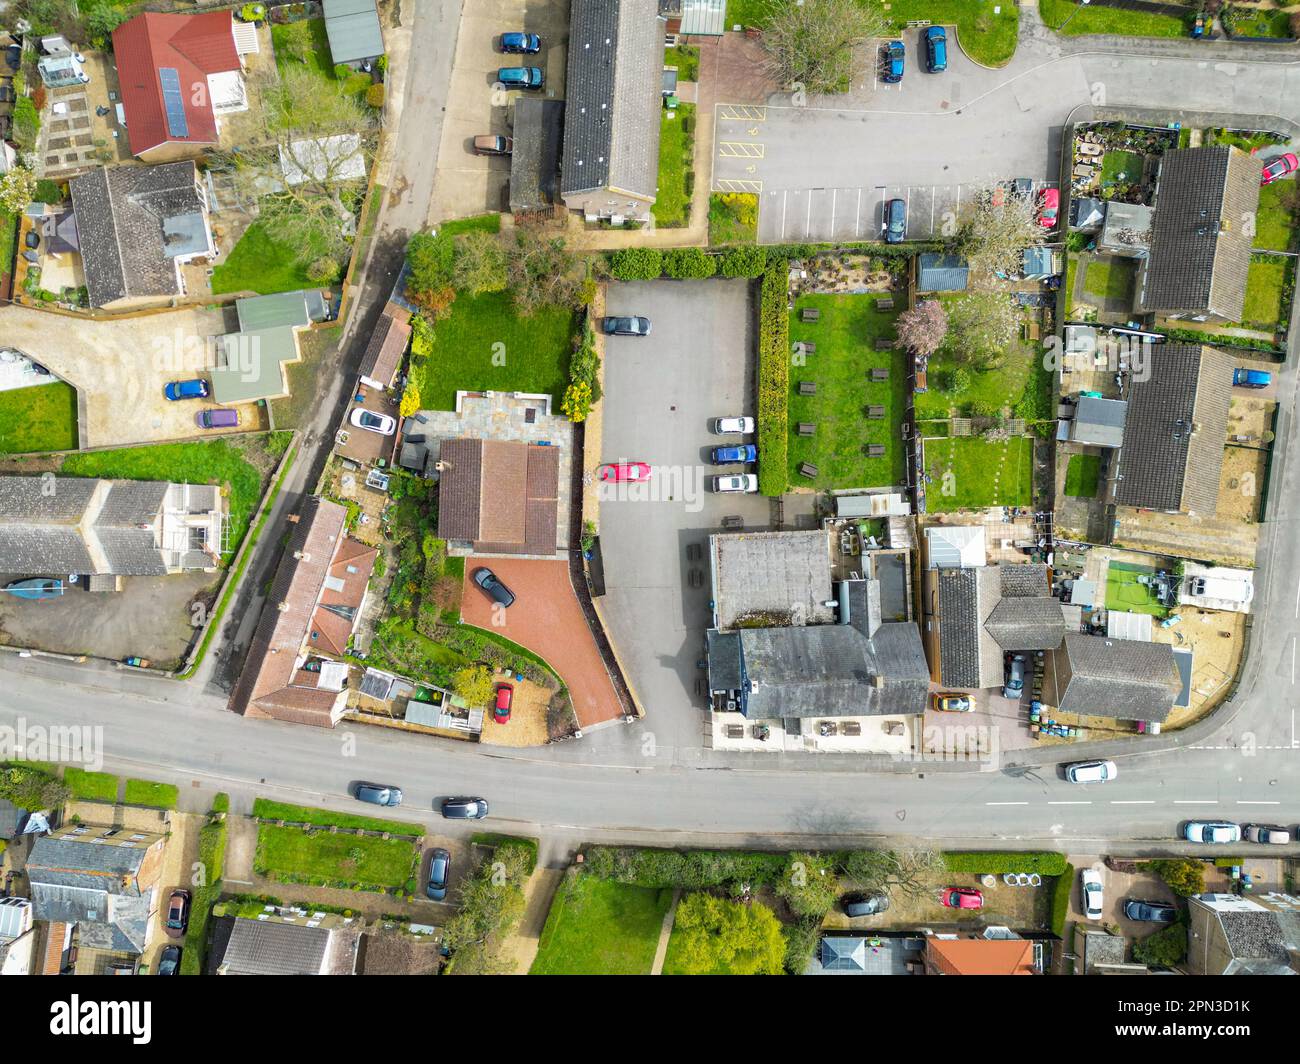 Veduta aerea dall'alto verso il basso del centro di un tipico villaggio inglese. Un pub e un grande parcheggio per carpe possono essere visti al centro dell'immagine. Foto Stock